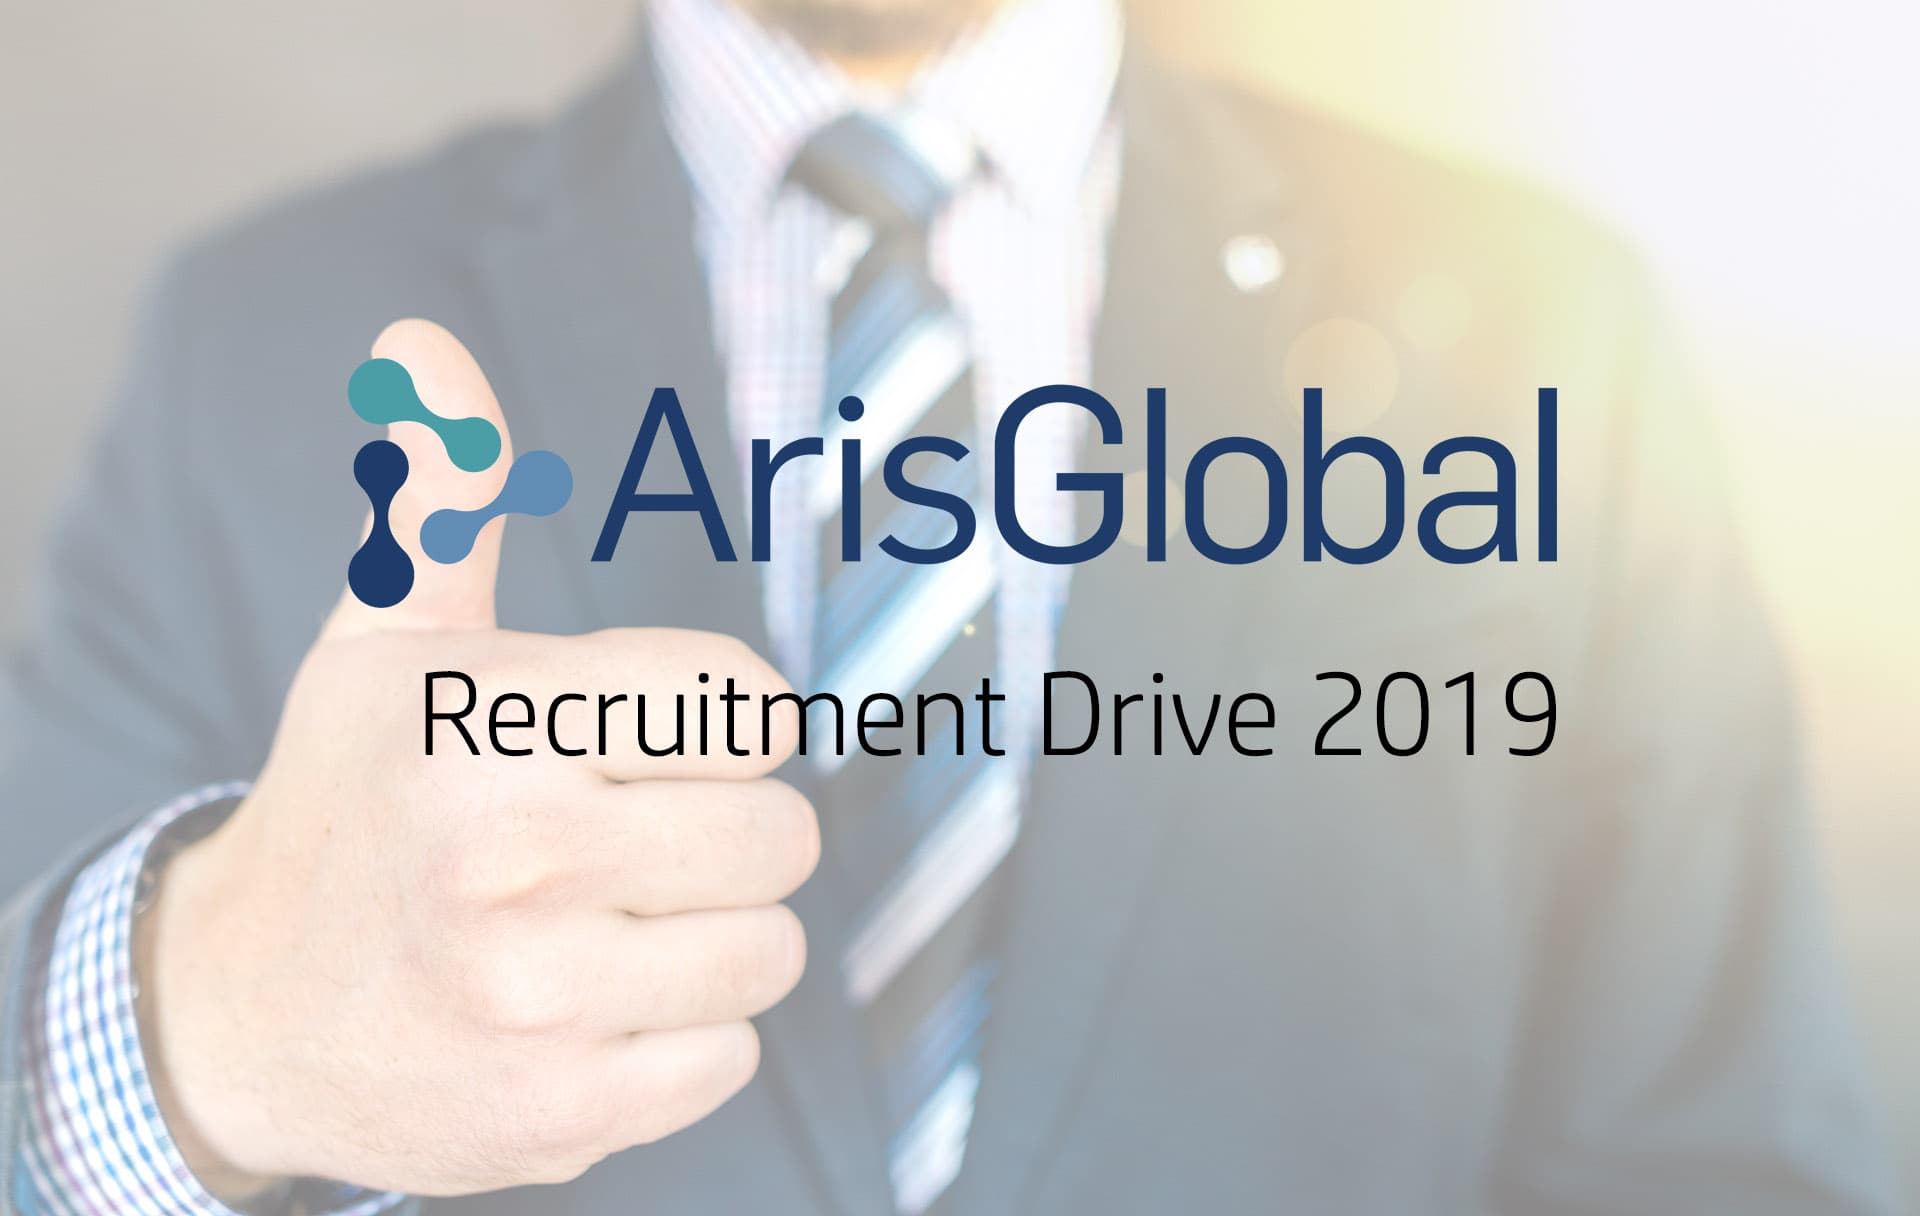 ArisGlobal Recruitment Drive